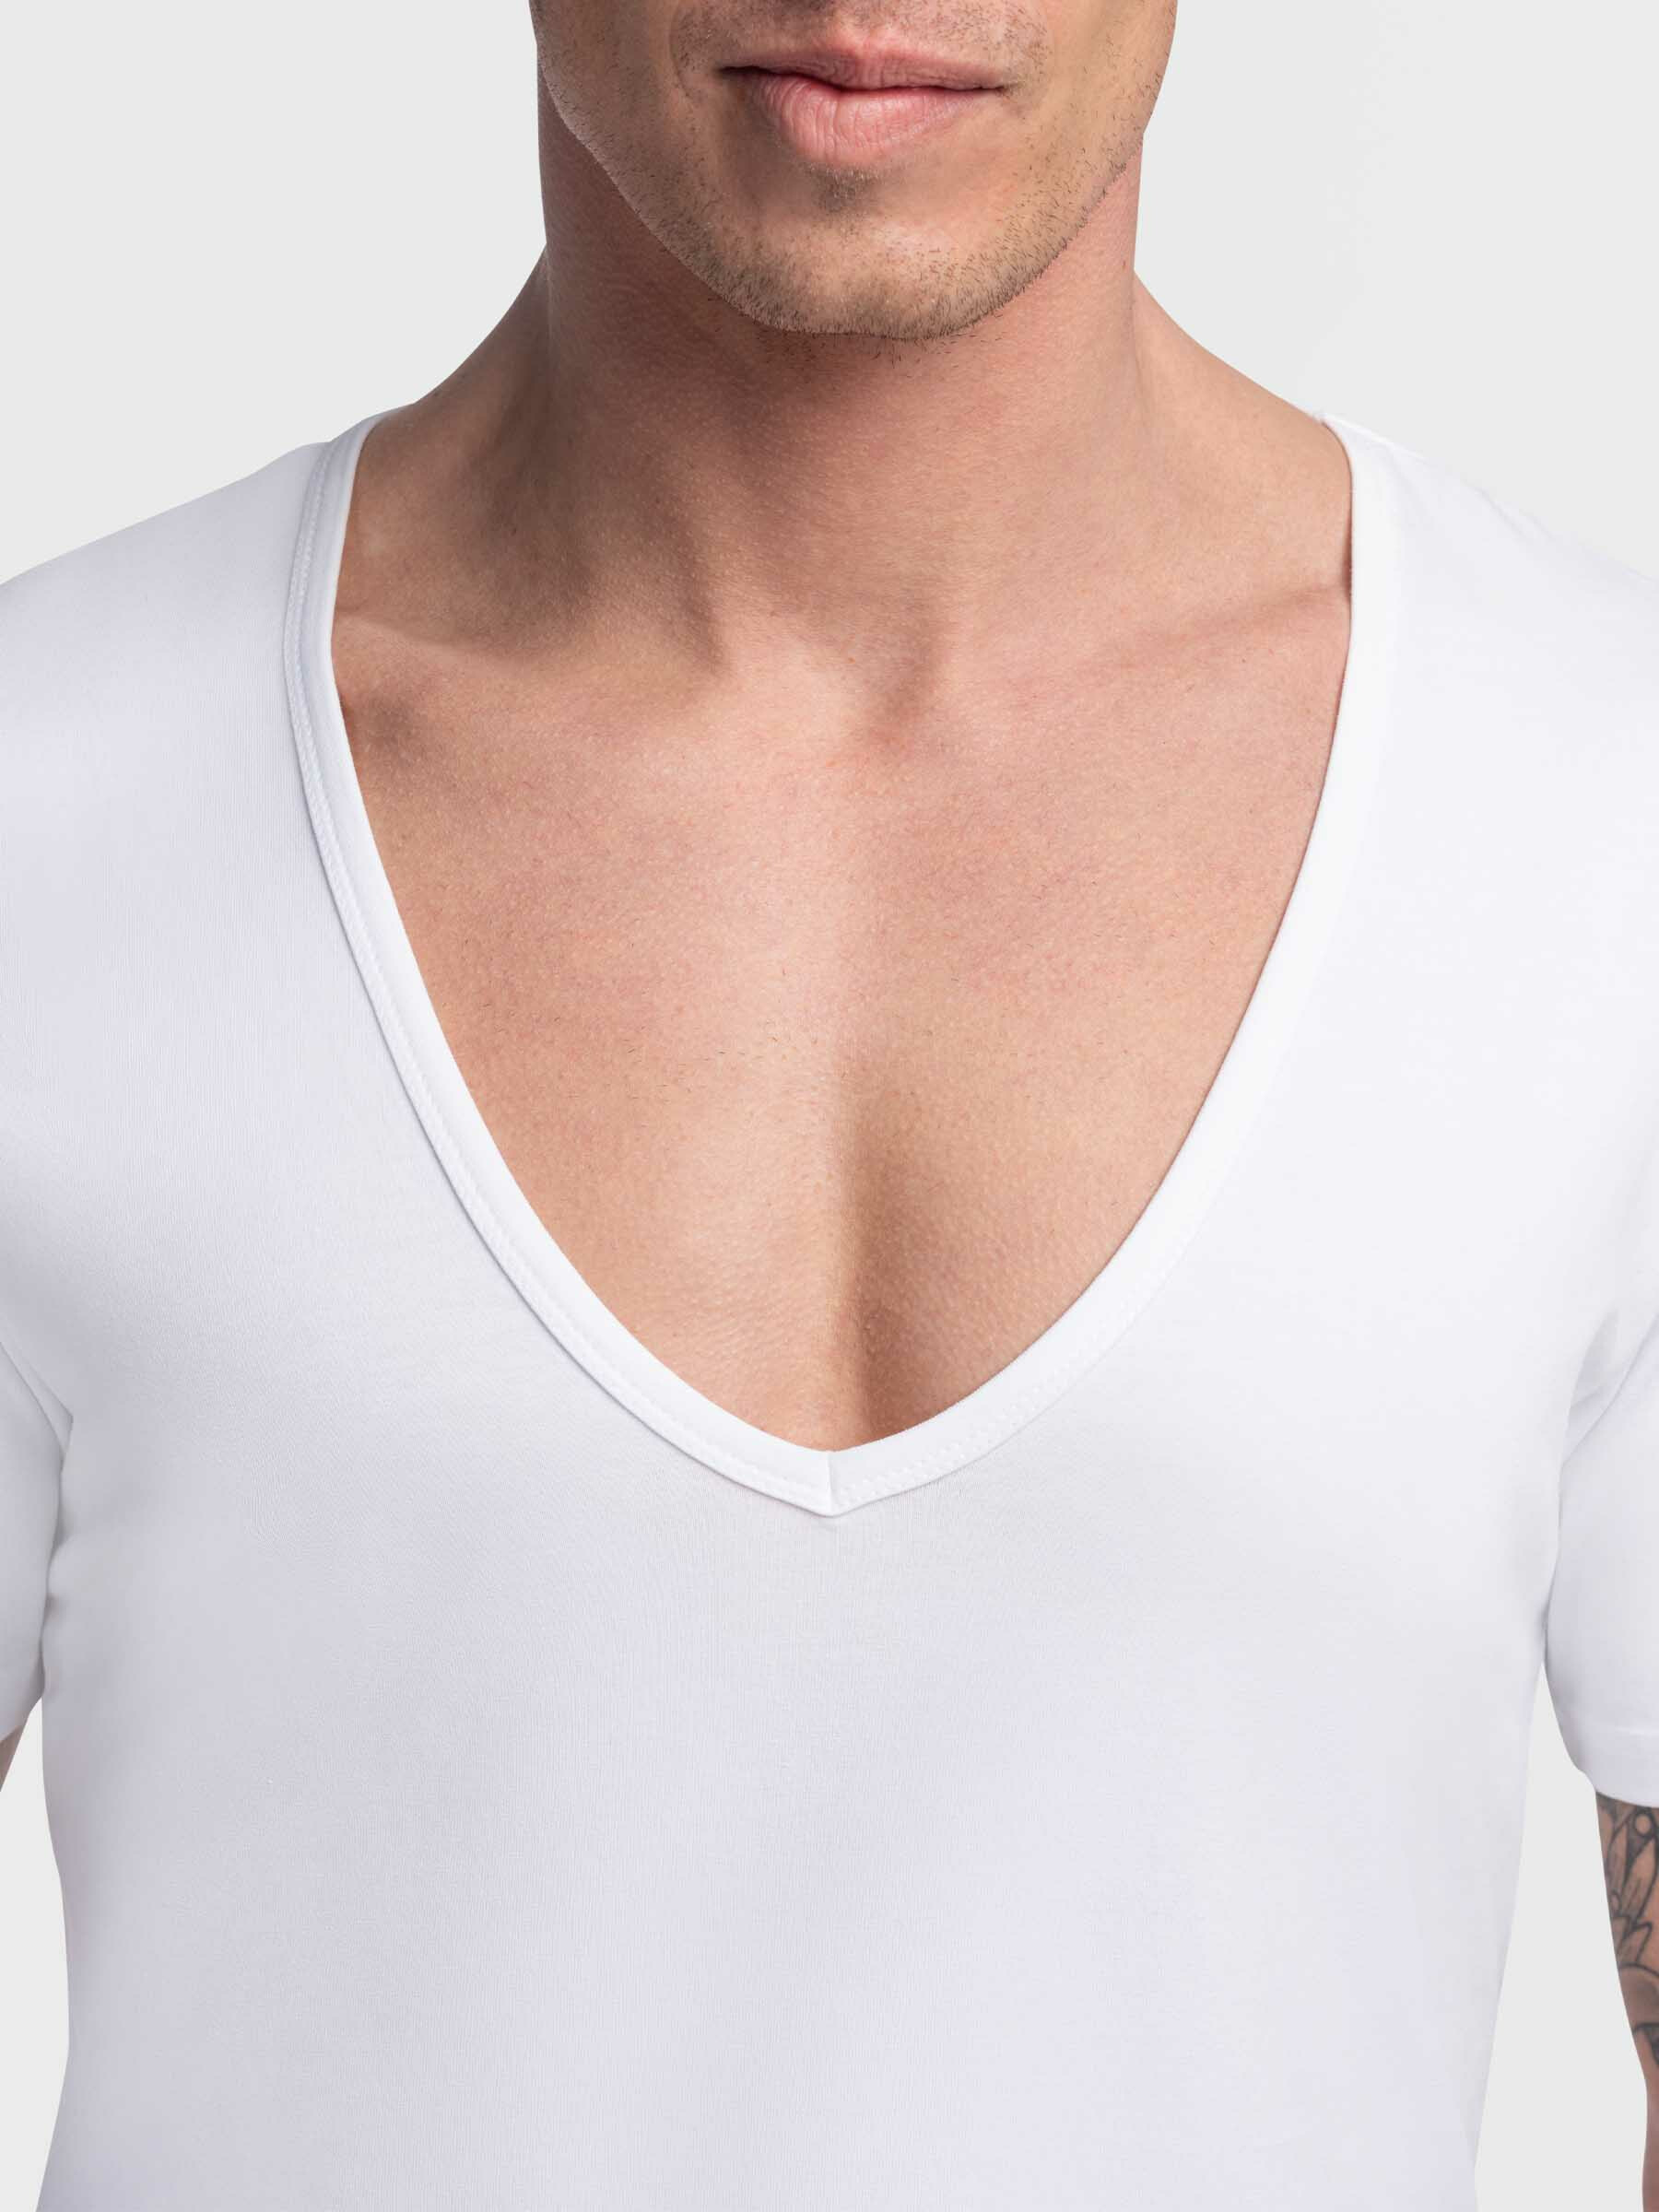 Roest Opvoeding Wedstrijd Wit T-shirt diepe V-hals Milano kopen? Extra lang - Girav